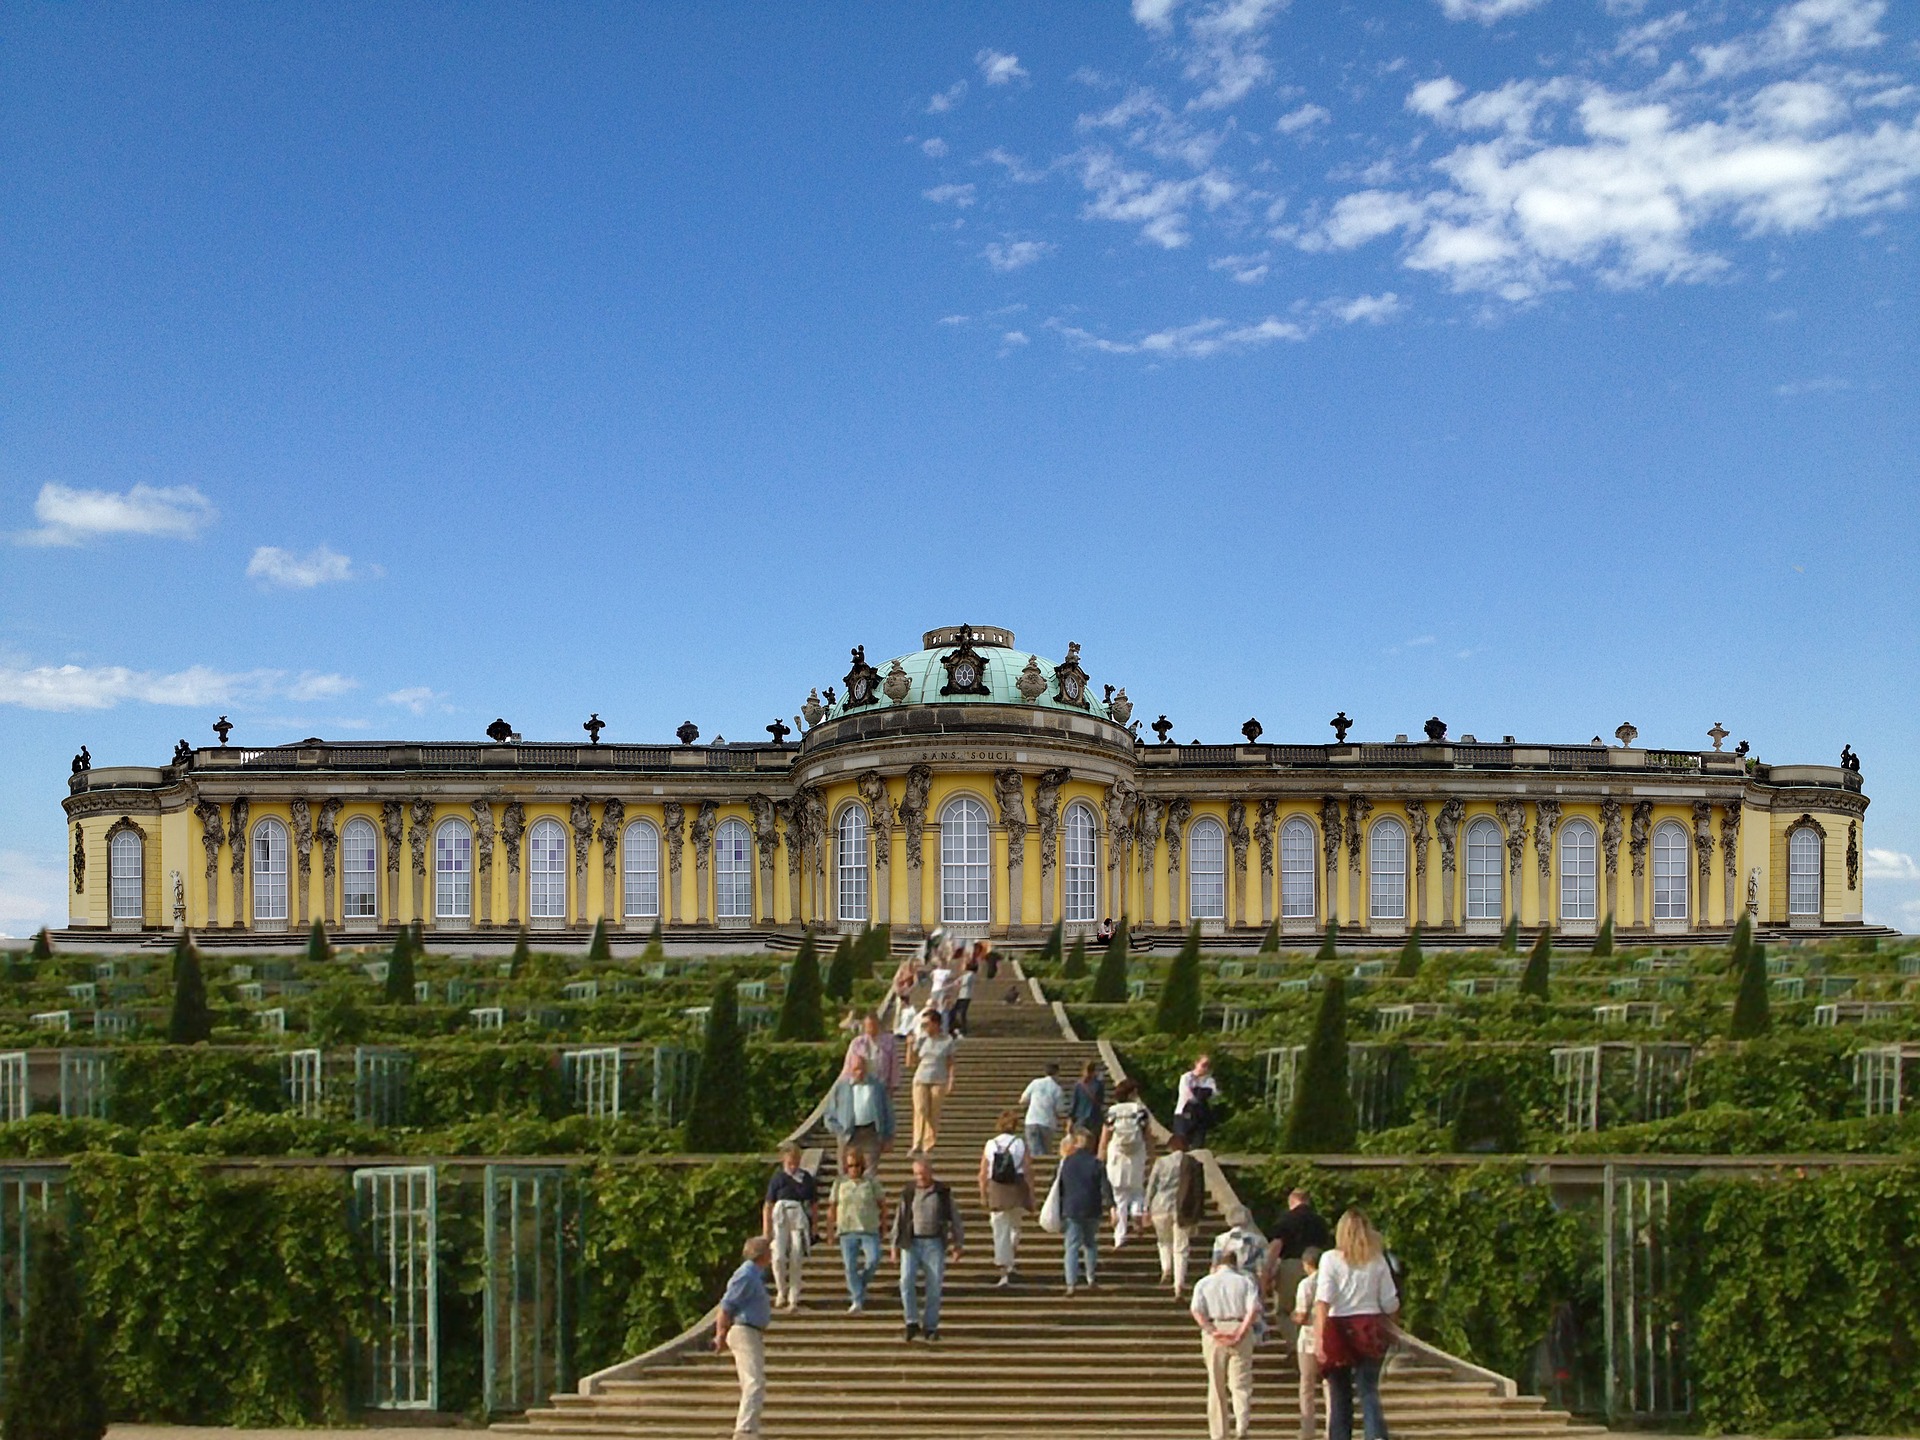 ポツダムとベルリンの宮殿群と公園群 | ドイツ | 世界遺産オンラインガイド